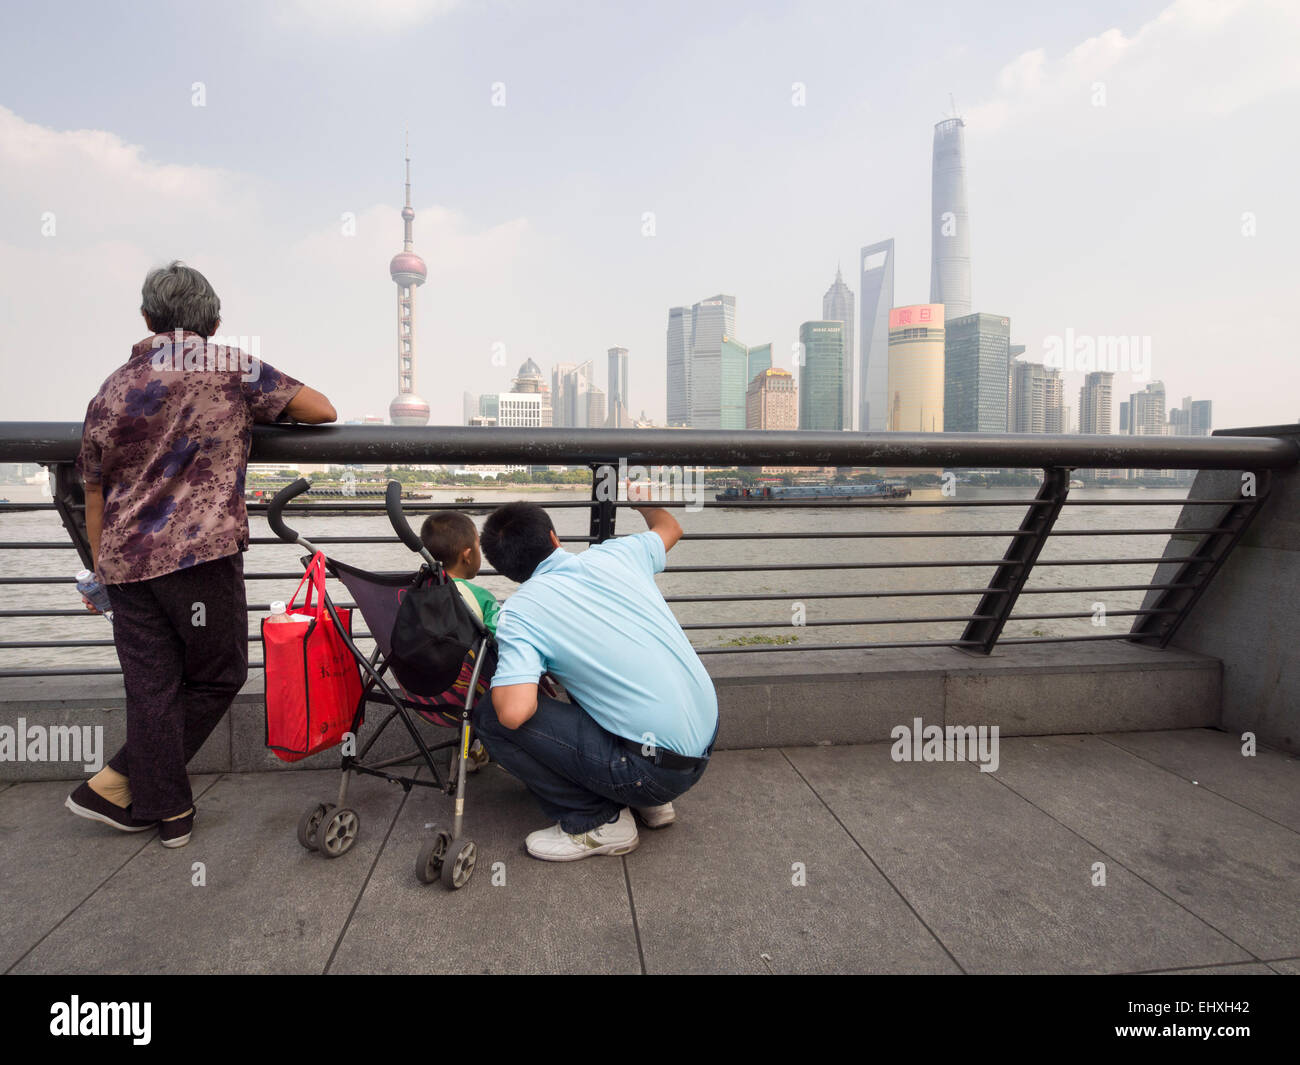 La grand-mère et le père de famille chinois avec un seul enfant sur une poussette de bébé profitant d'une vue sur le quartier de Pudong de Shanghai, Chine Banque D'Images